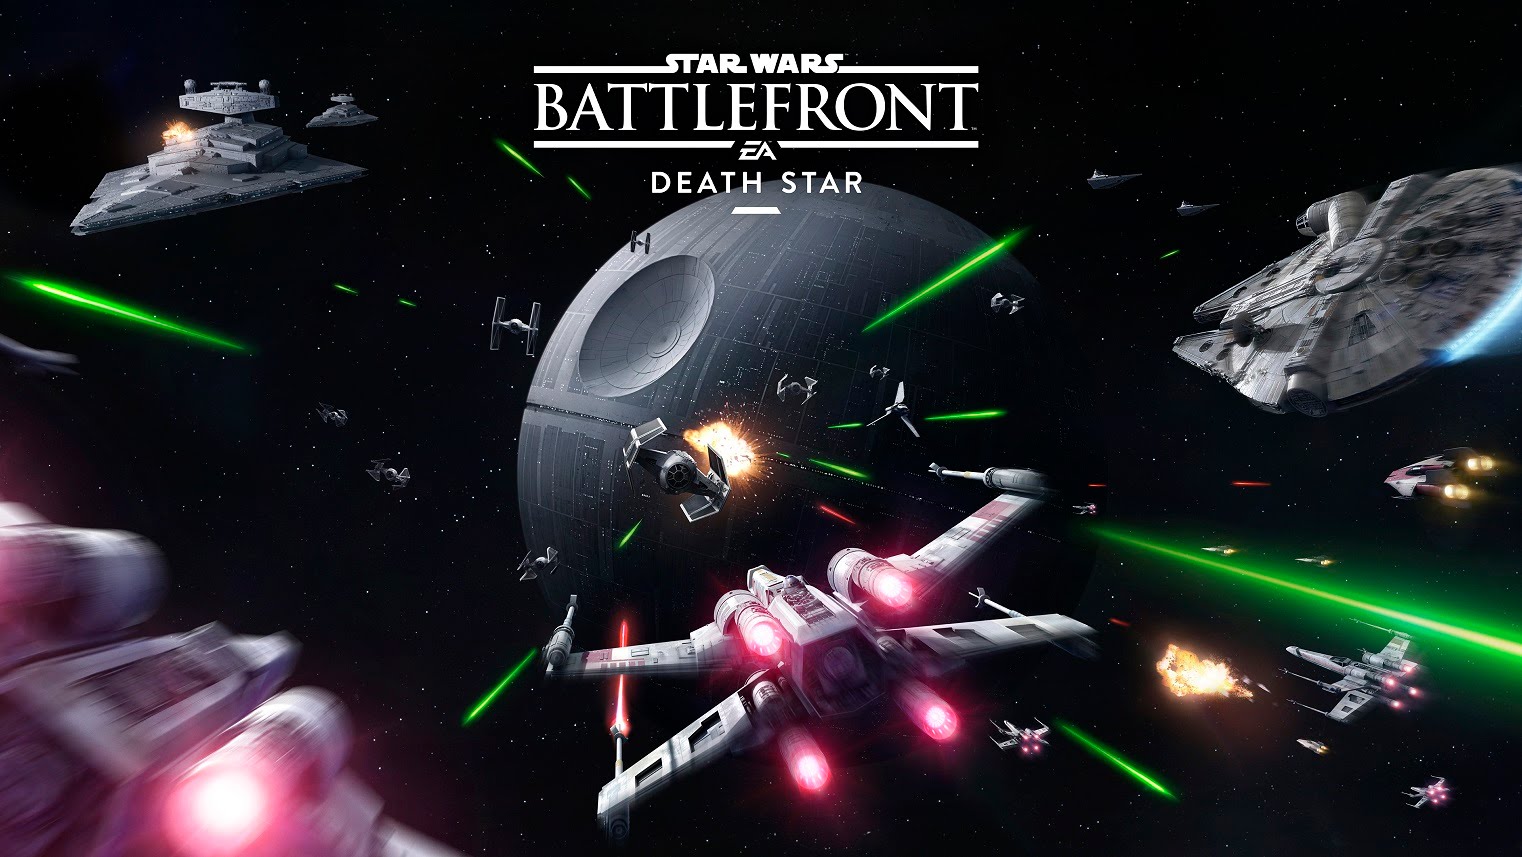 EA divulga novidades sobre Star Wars Battlefront – Estrela da Morte. Veja o trailer